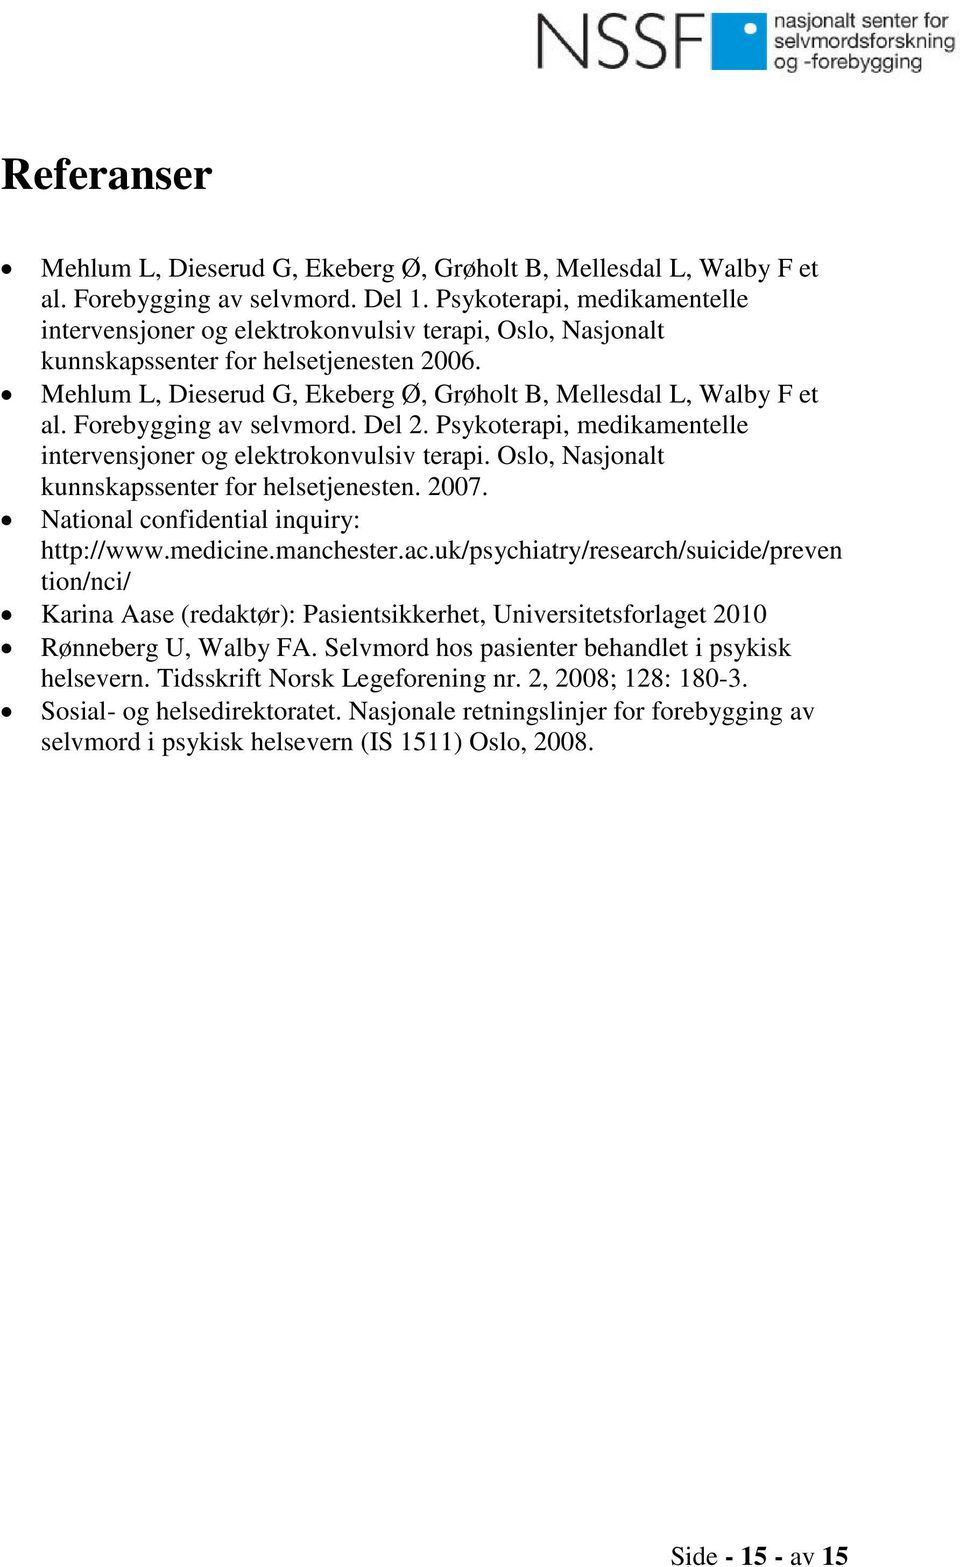 Forebygging av selvmord. Del 2. Psykoterapi, medikamentelle intervensjoner og elektrokonvulsiv terapi. Oslo, Nasjonalt kunnskapssenter for helsetjenesten. 2007.